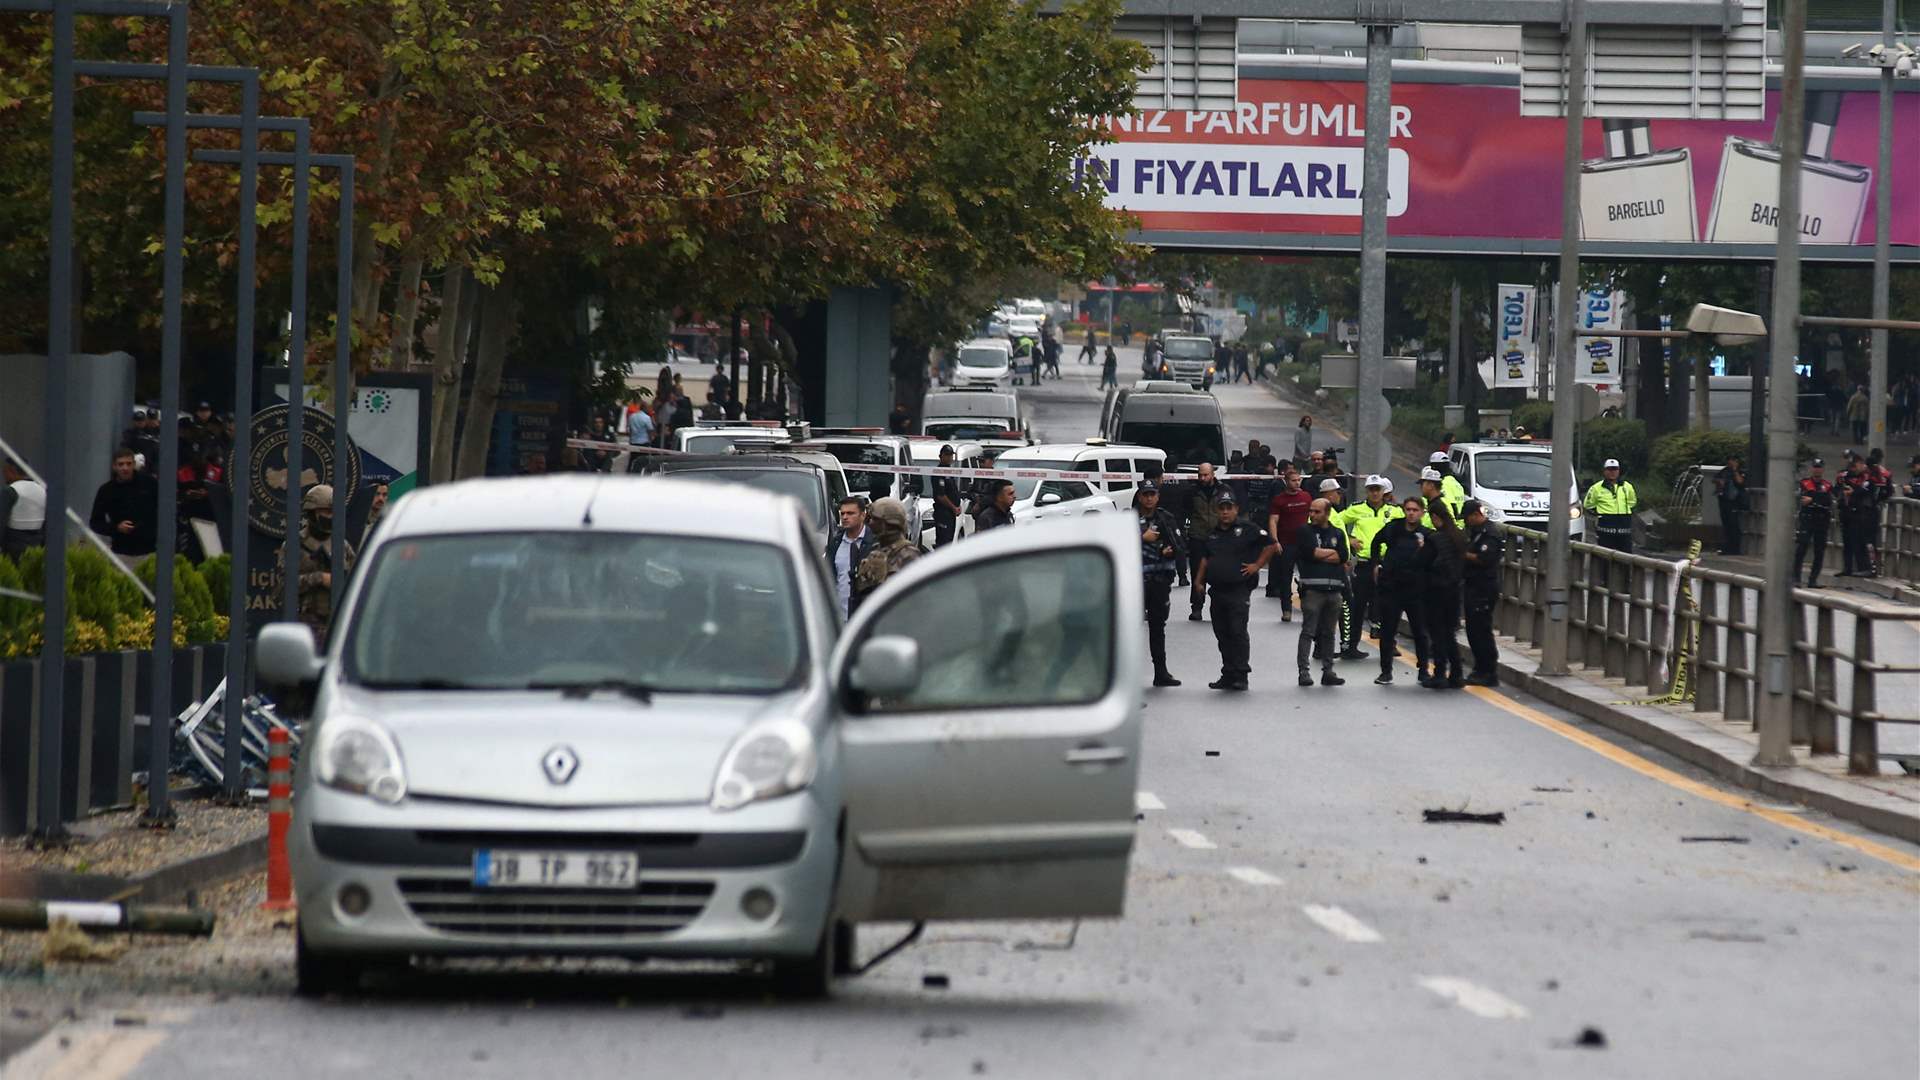 Ankara explosion is a terrorist attack: Turkish Interior Ministry